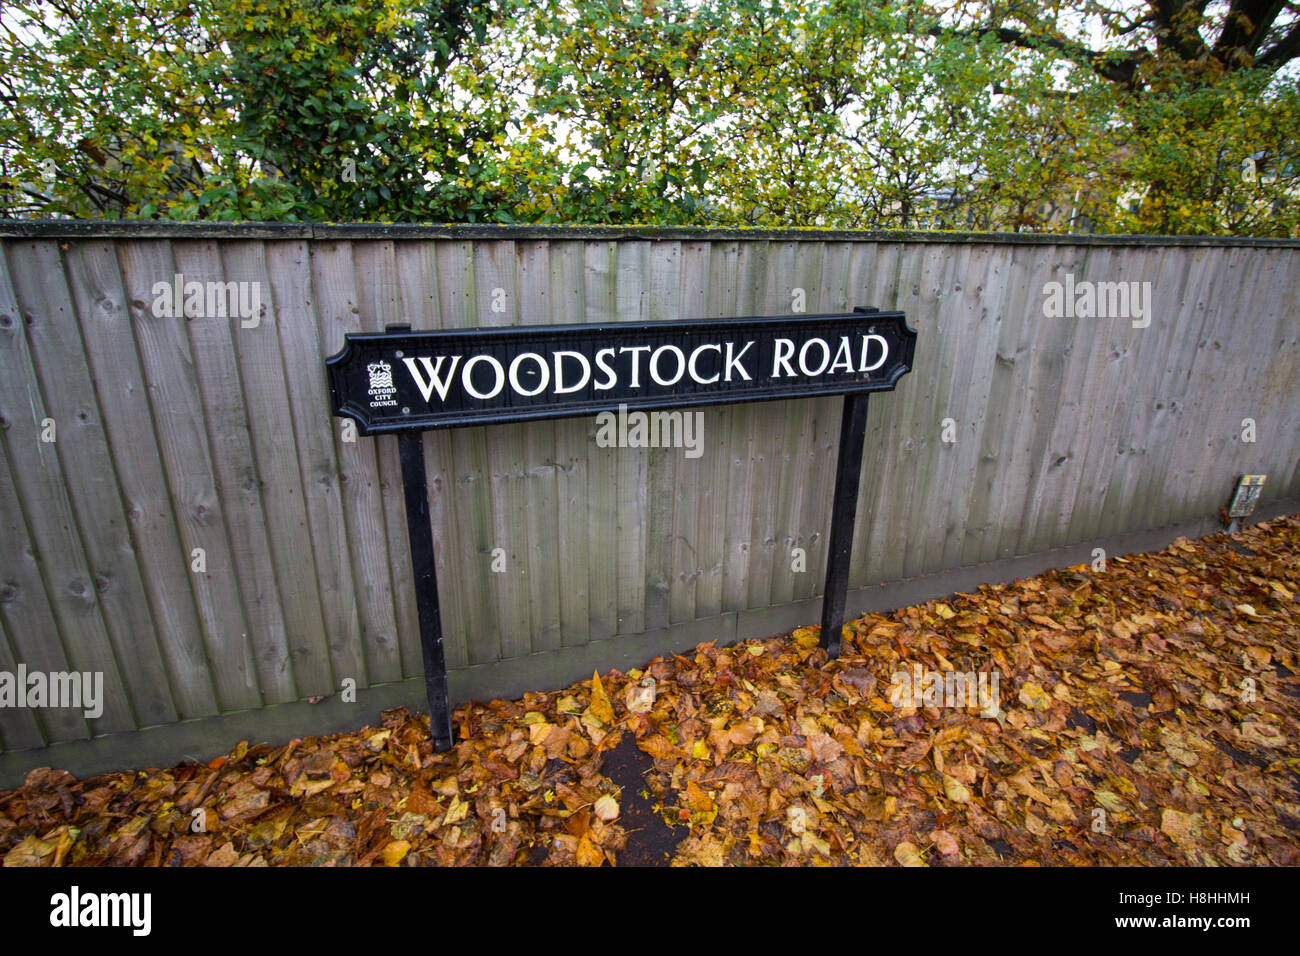 Woodstock Road street sign entouré par les feuilles d'automne à Summertown, North Oxford, Oxfordshire, UK Banque D'Images